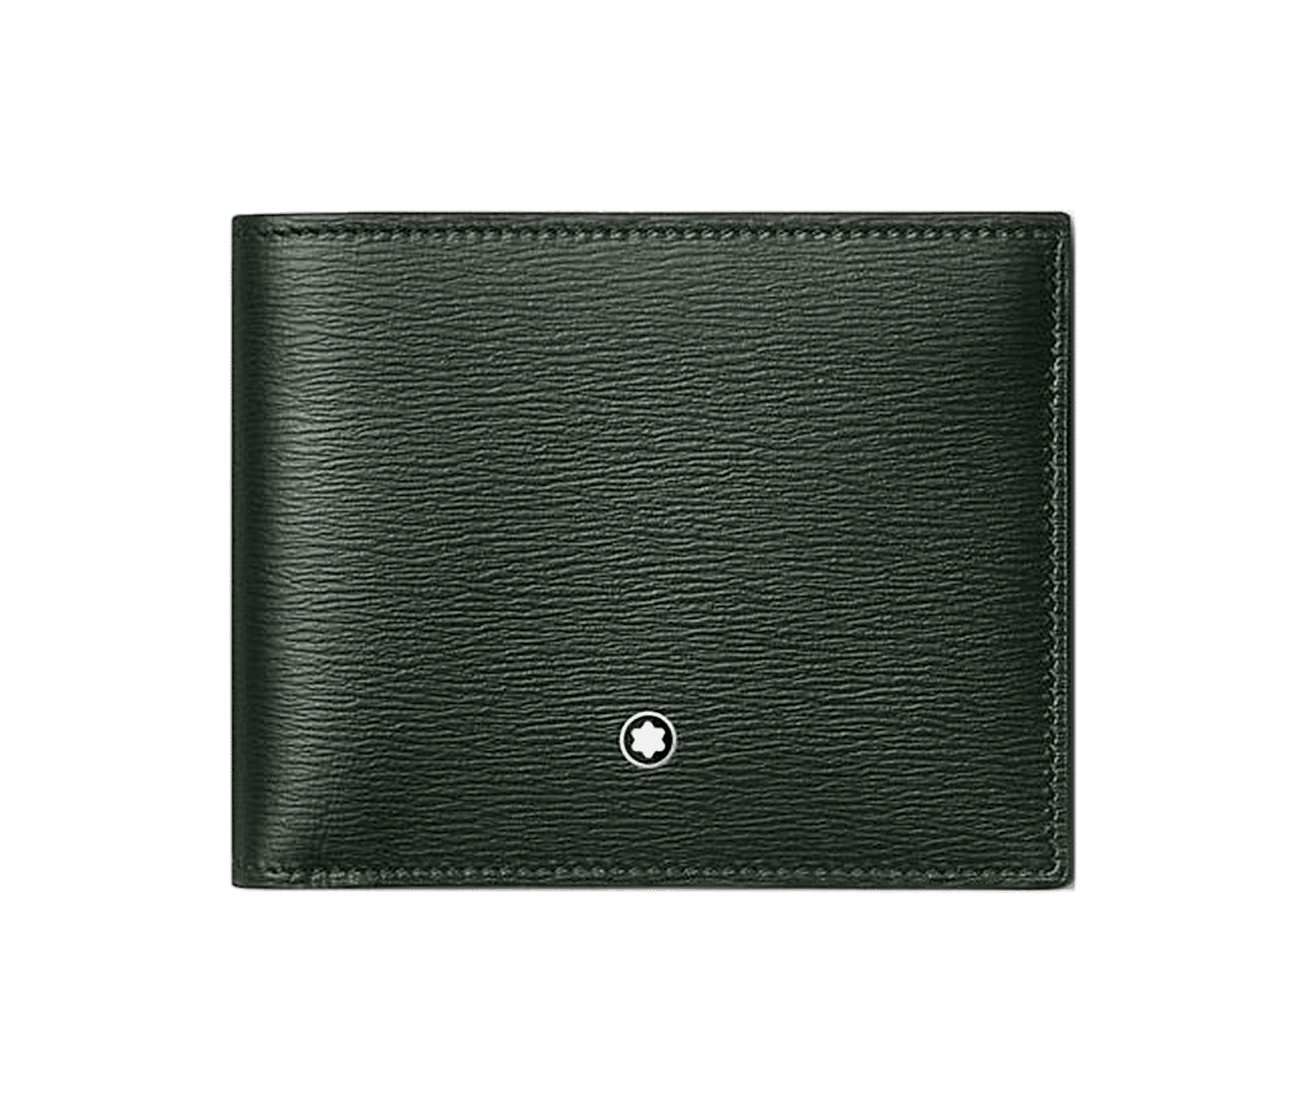 Meisterstuck 4810 Wallet 6cc - Green